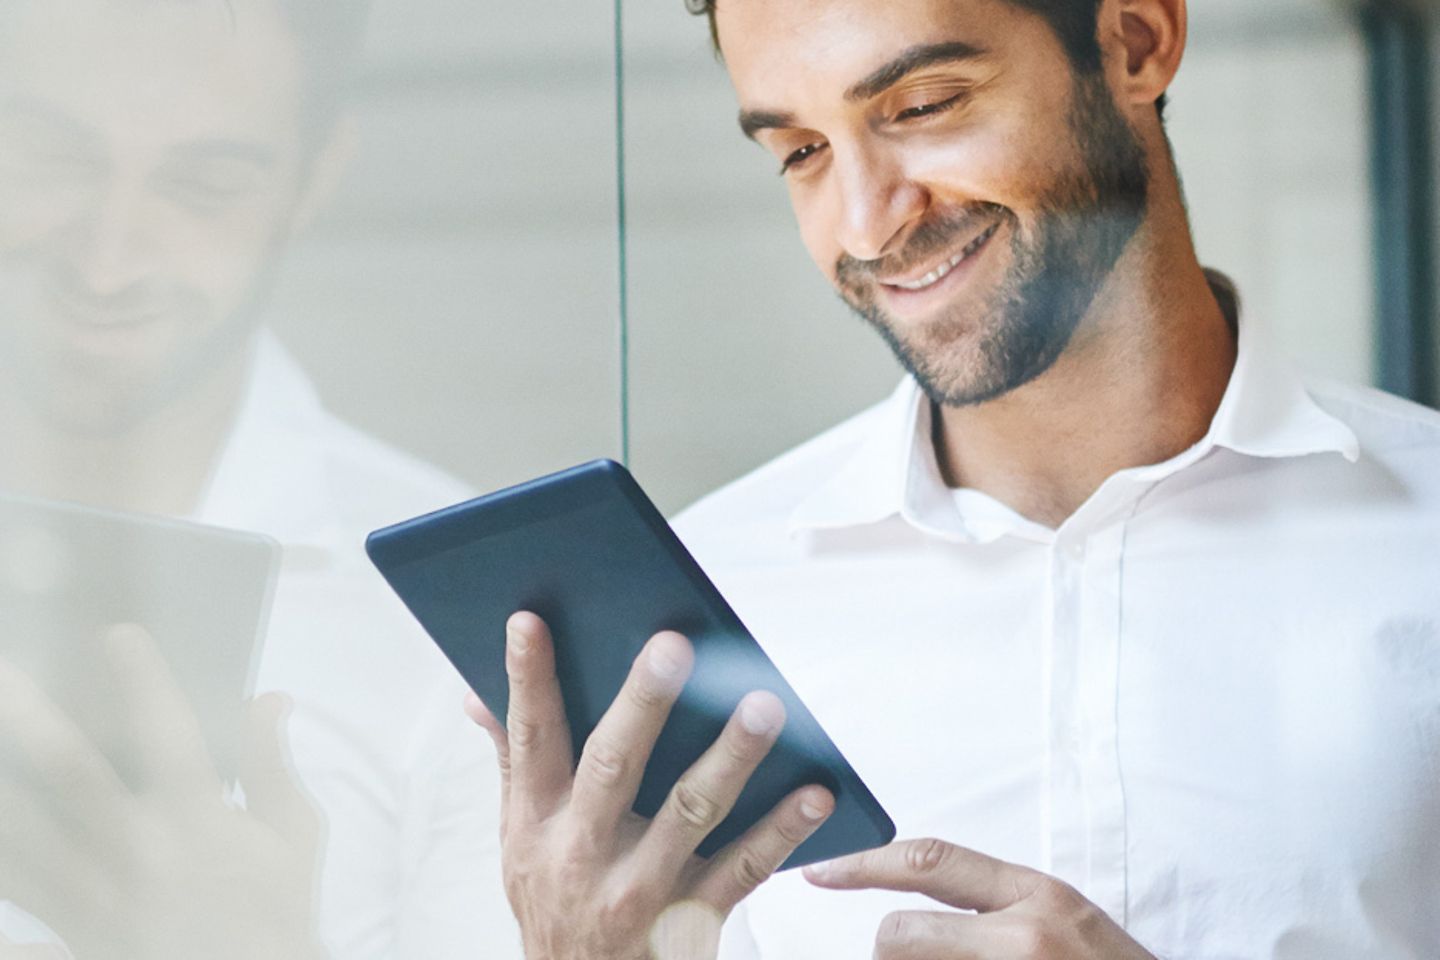 Um empresário sorrindo encosta-se em um painel de vidro e olha um tablet